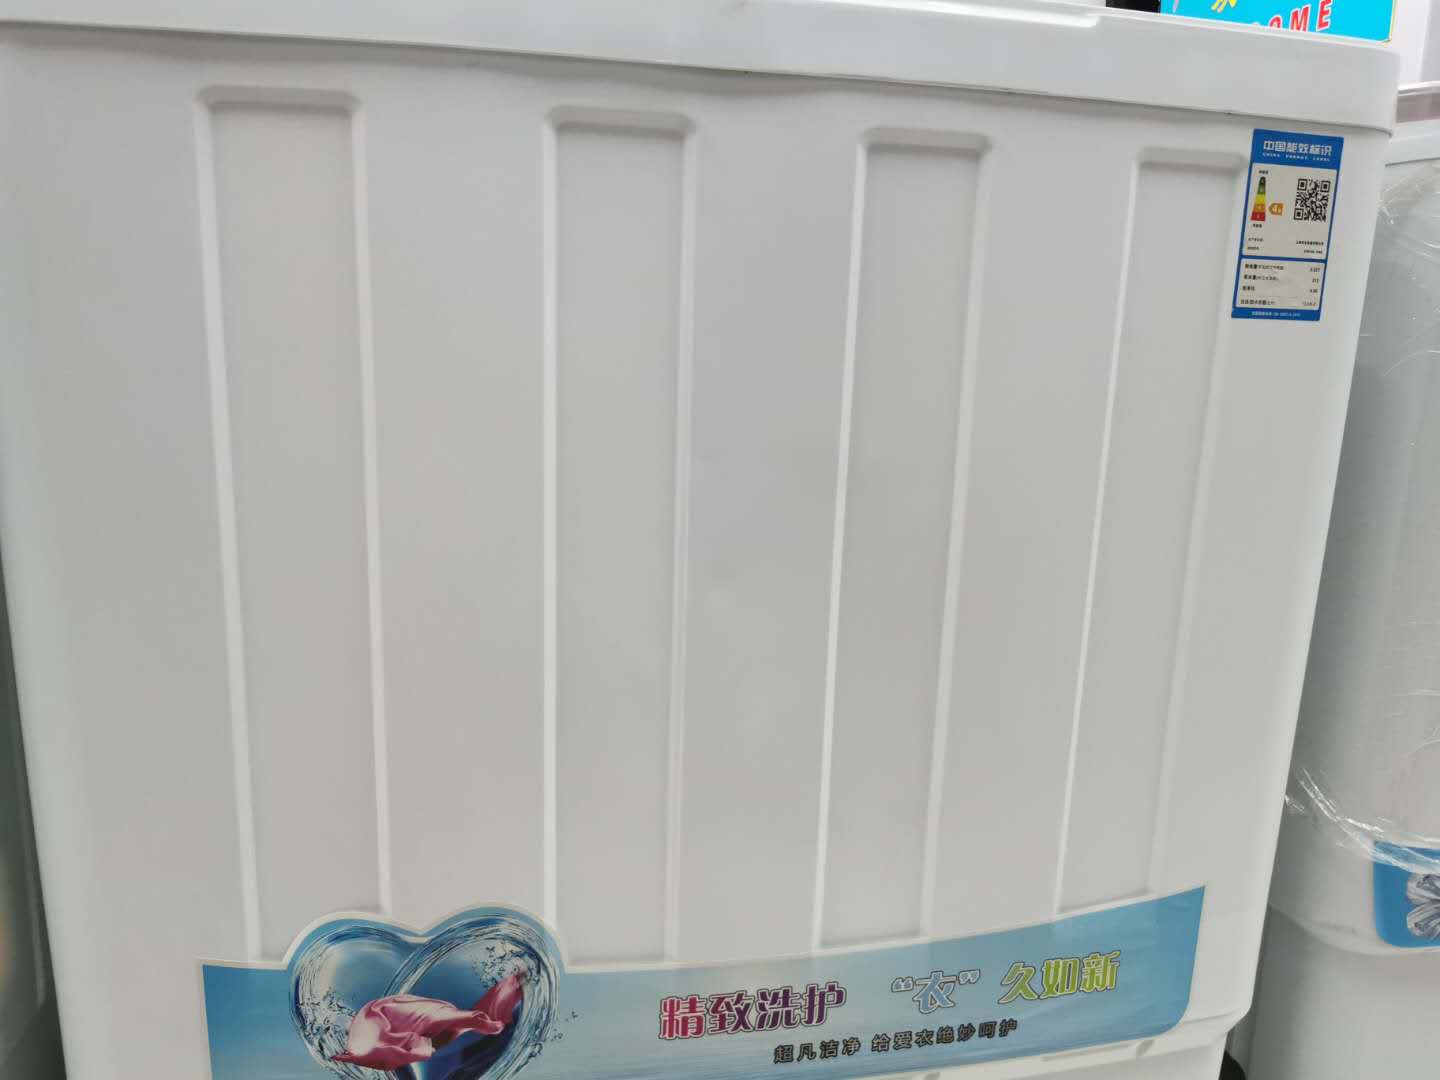 上海华生半自动洗衣机13公斤产品图